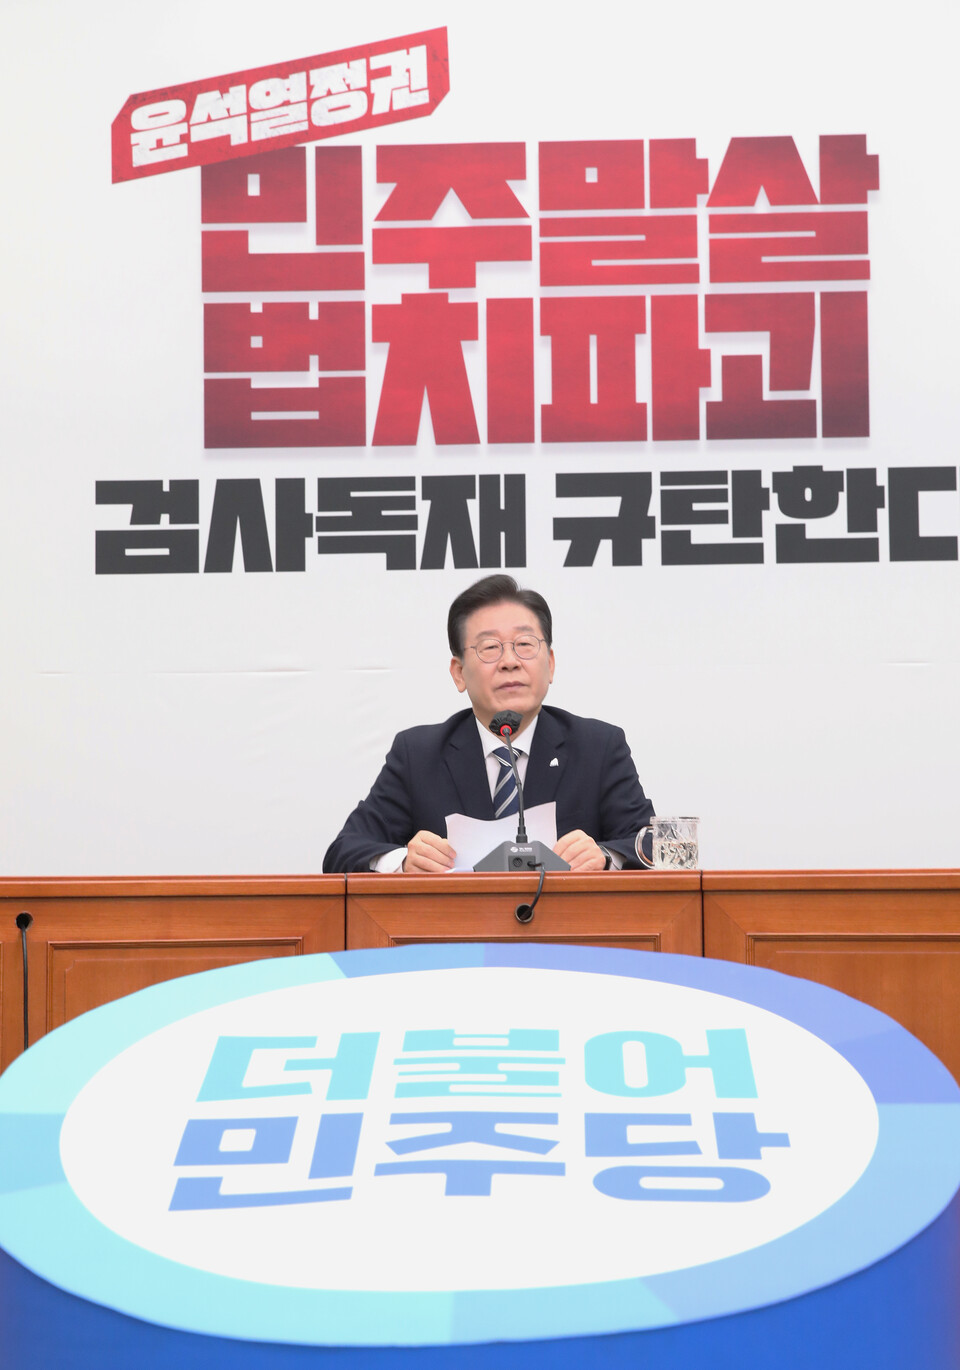 이재명 더불어민주당 대표가 지난 23일 오전 서울 여의도 국회에서 열린 기자간담회에 참석해 발언하고 있다.&nbsp; [사진제공=뉴시스]